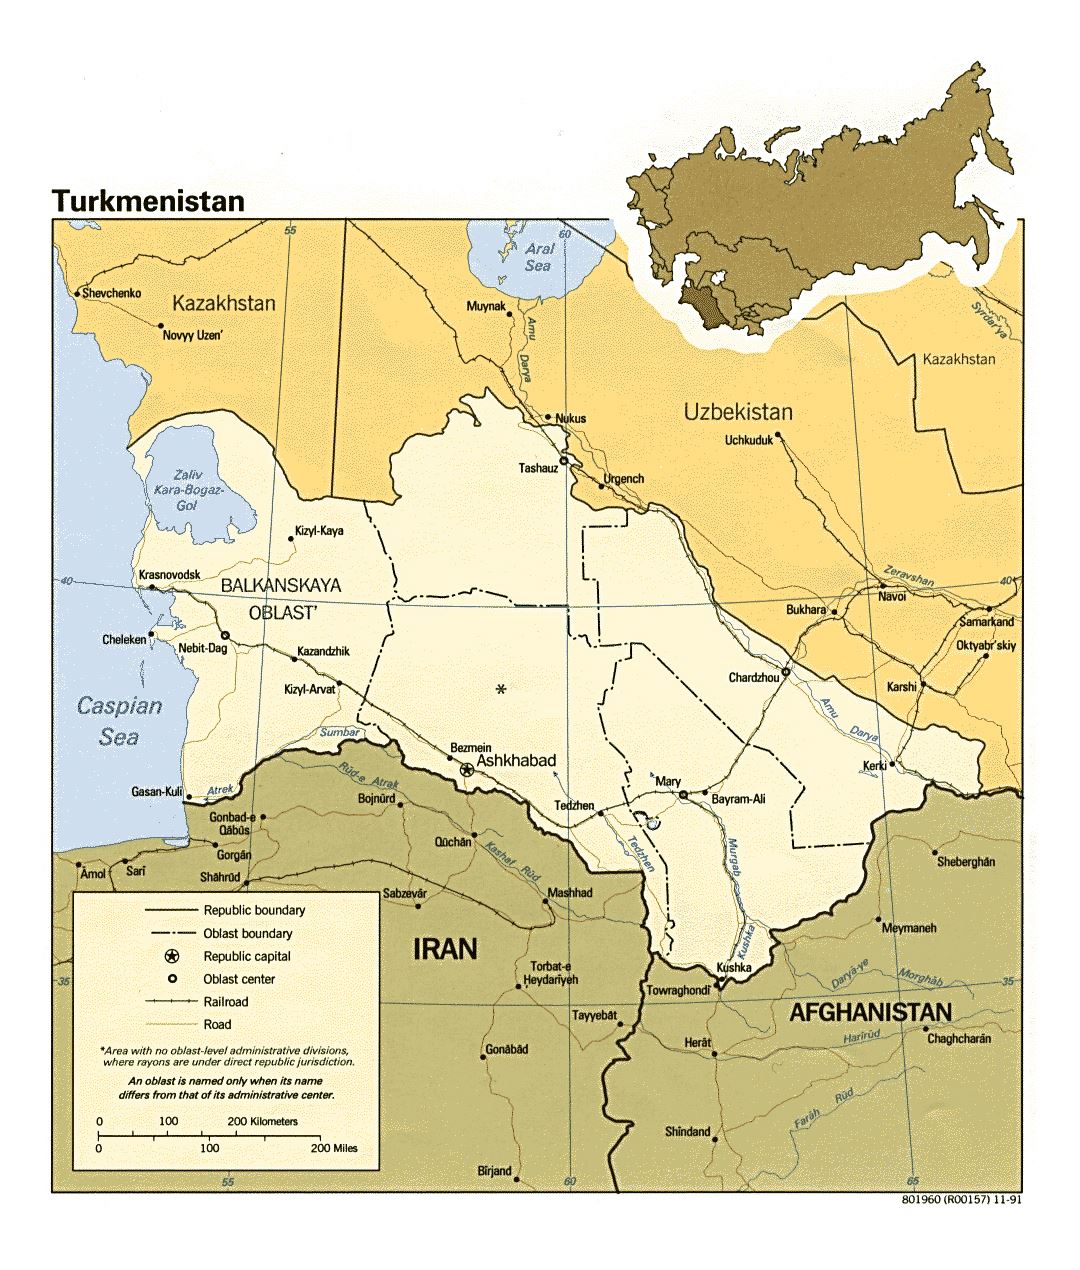 Детальная политическая и административная карта Туркменистана с дорогами, железными дорогами и крупными городами - 1991